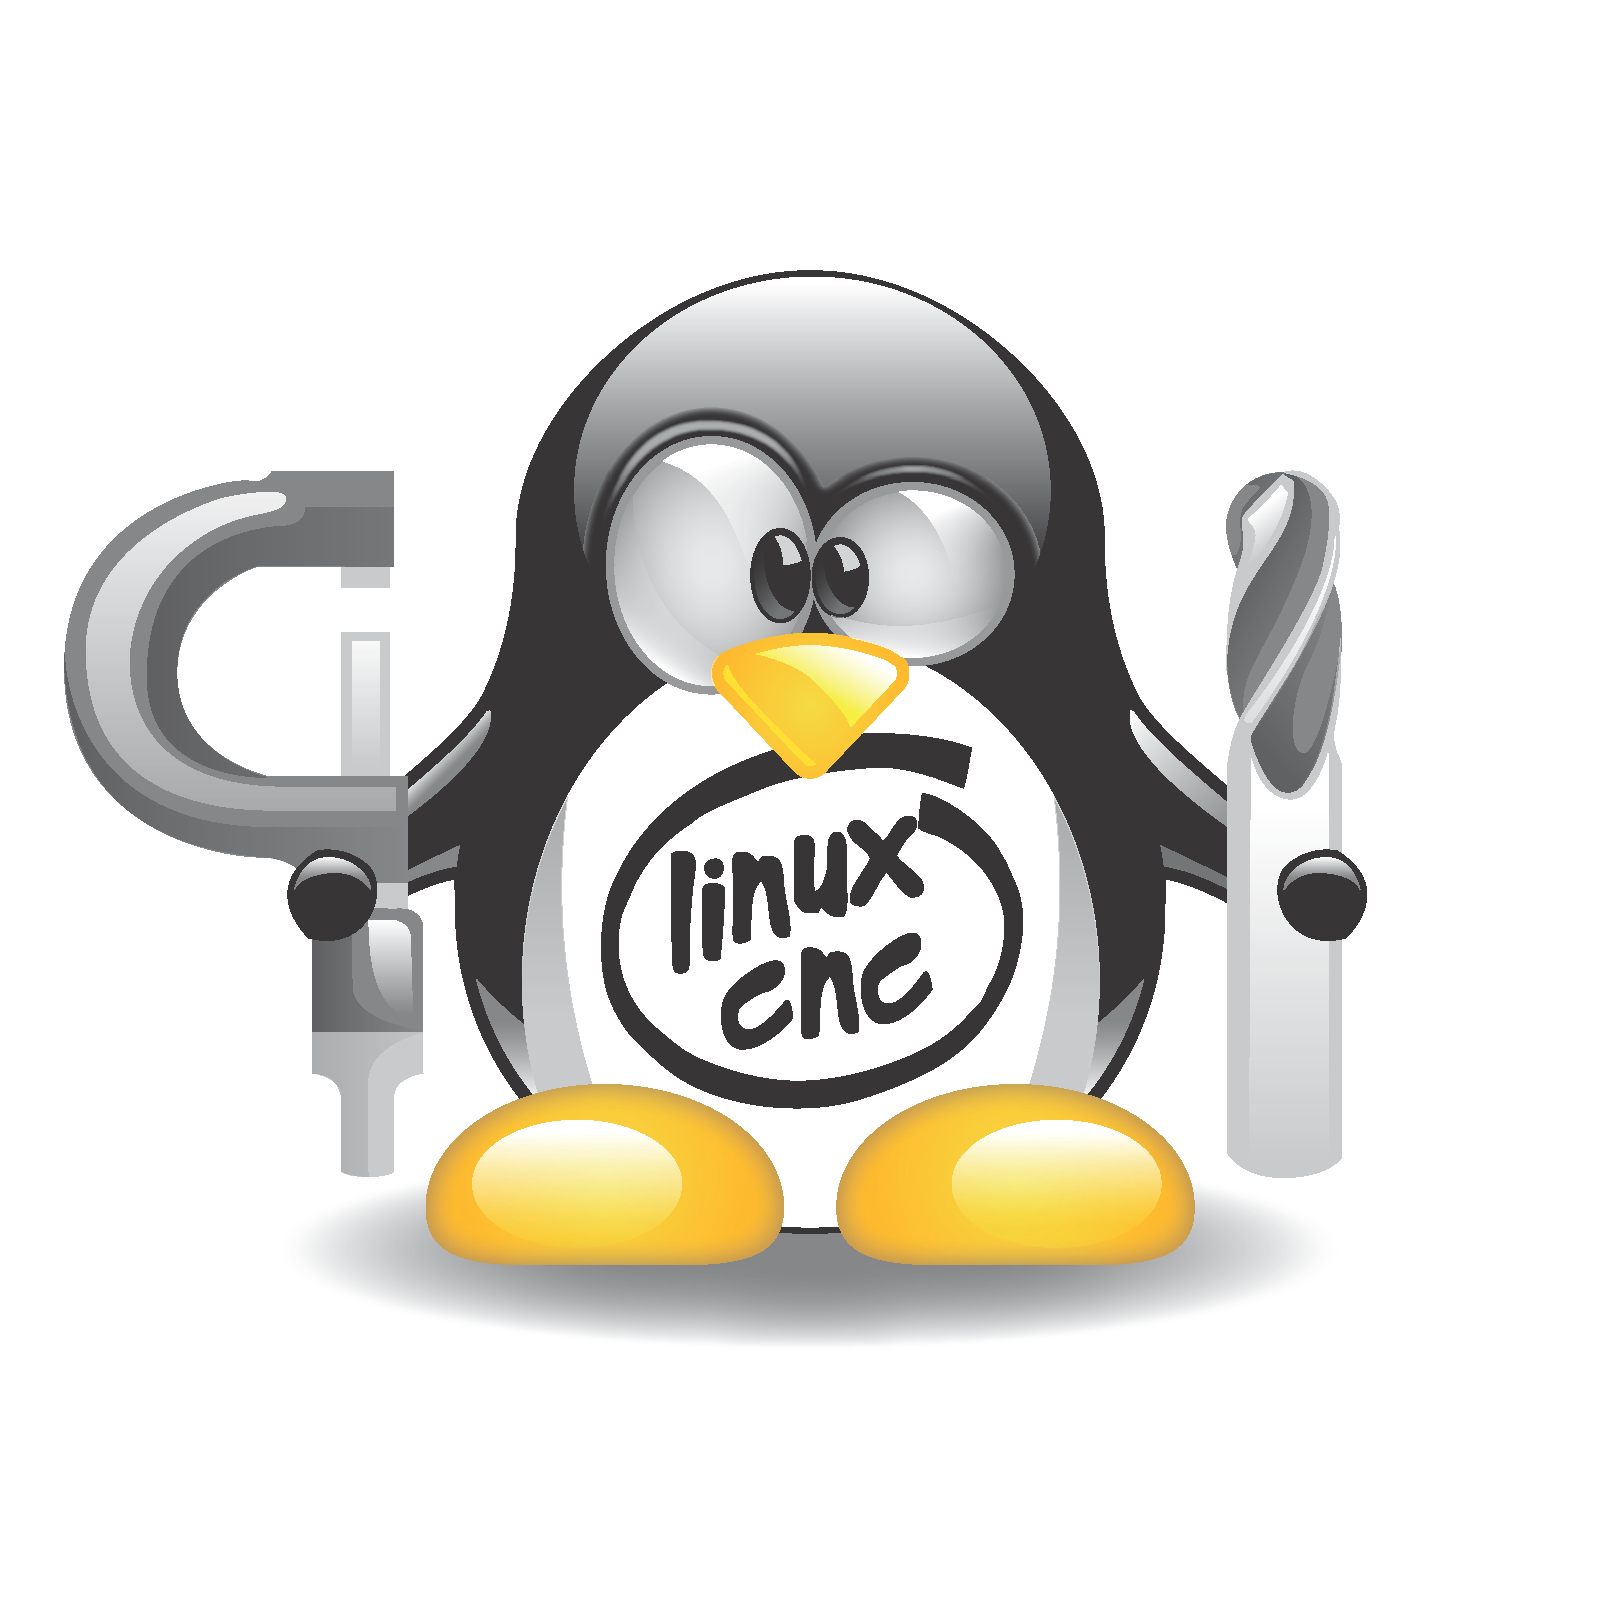 LinuxCNC_mascot1.png